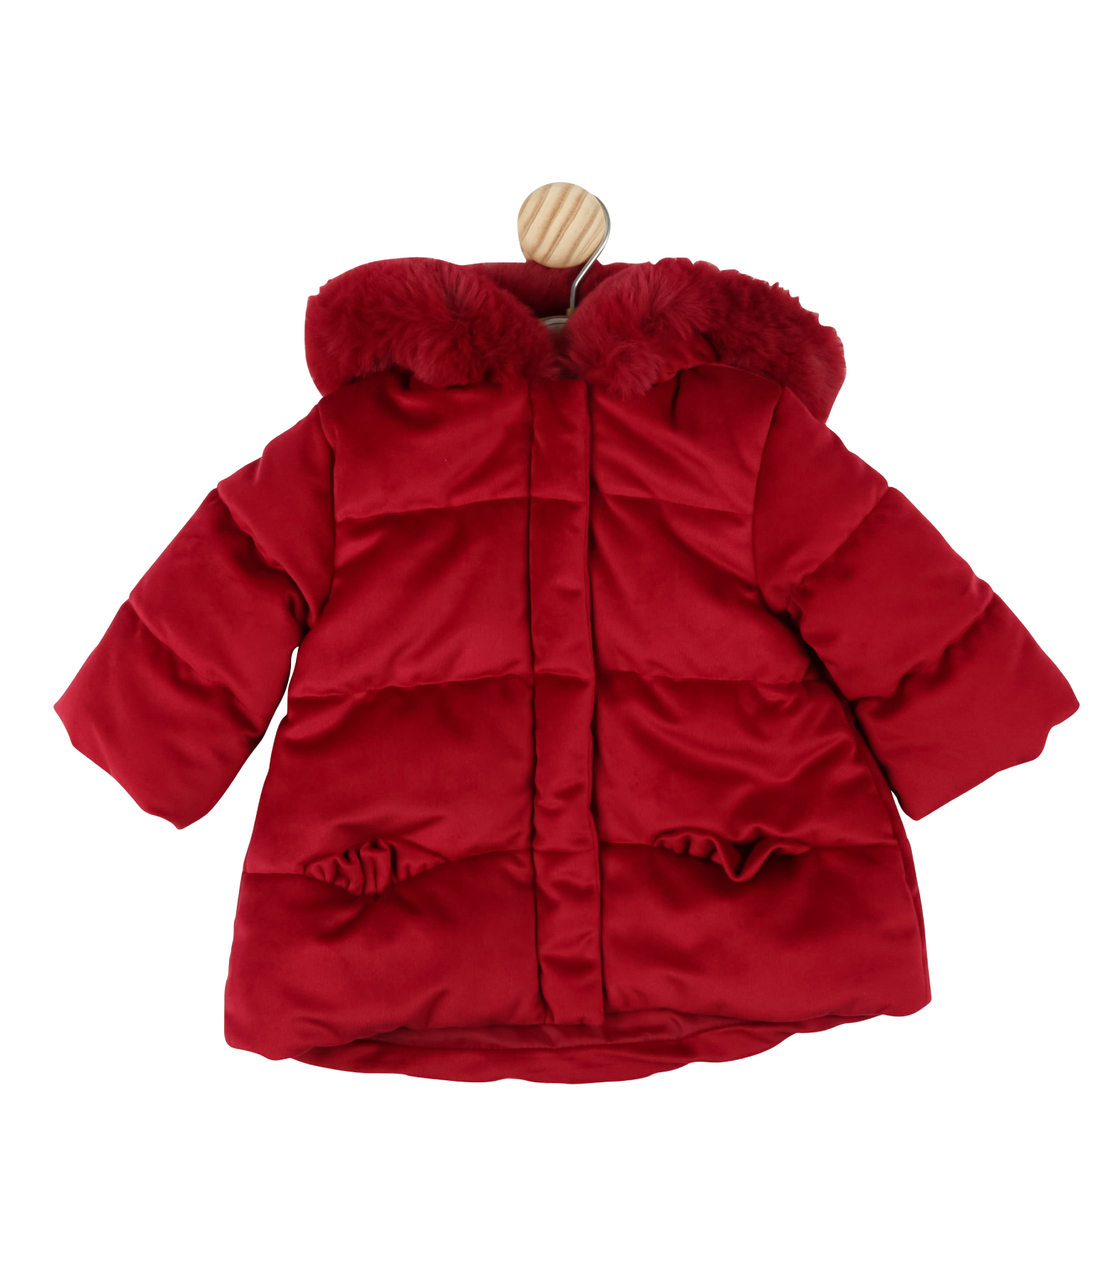 Red Velvet Hooded Coat by Mintini Baby BS21BM01 - Babble Store